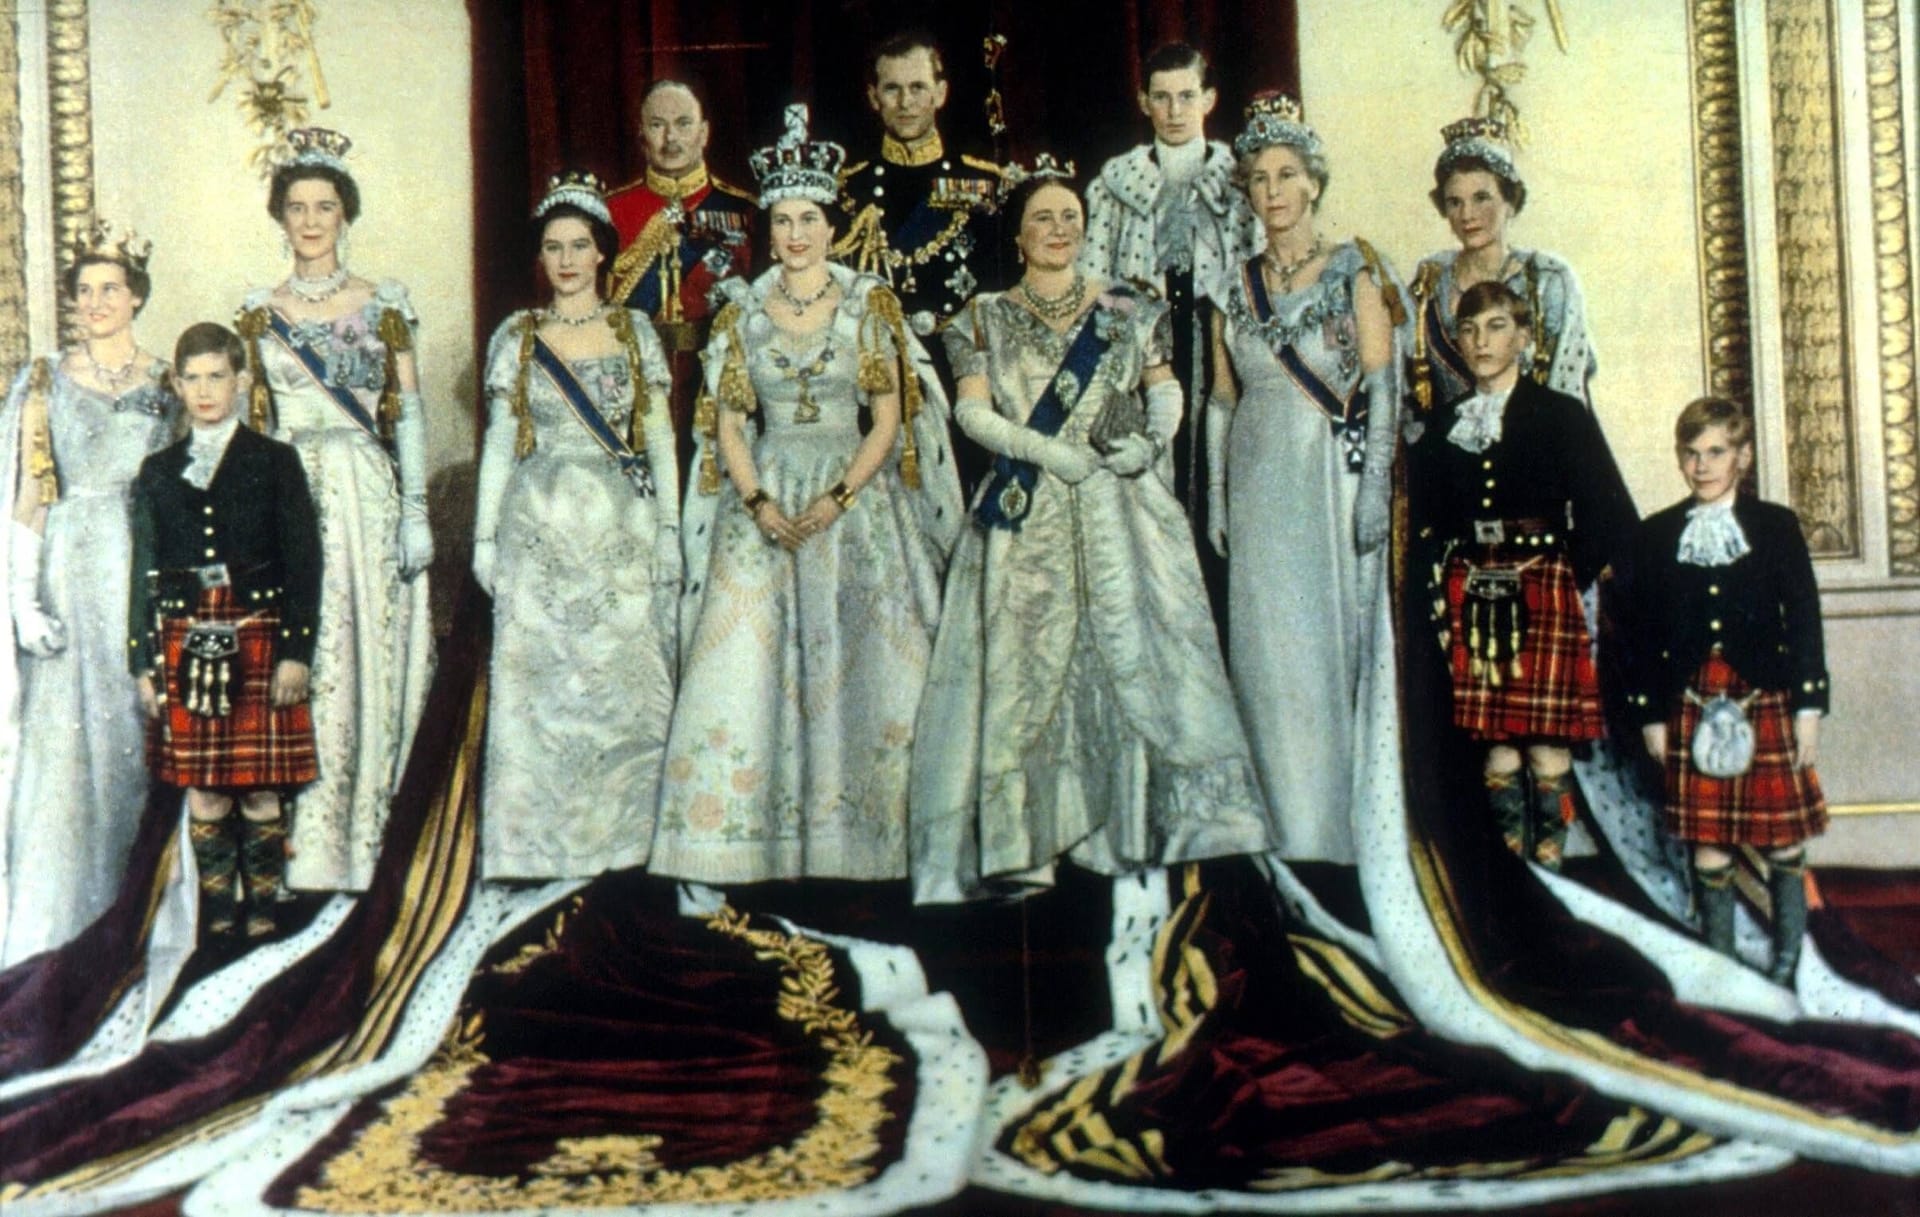 1953 fand die letzte Krönung statt: Damals wurde Elizabeth II. zur Königin Englands.